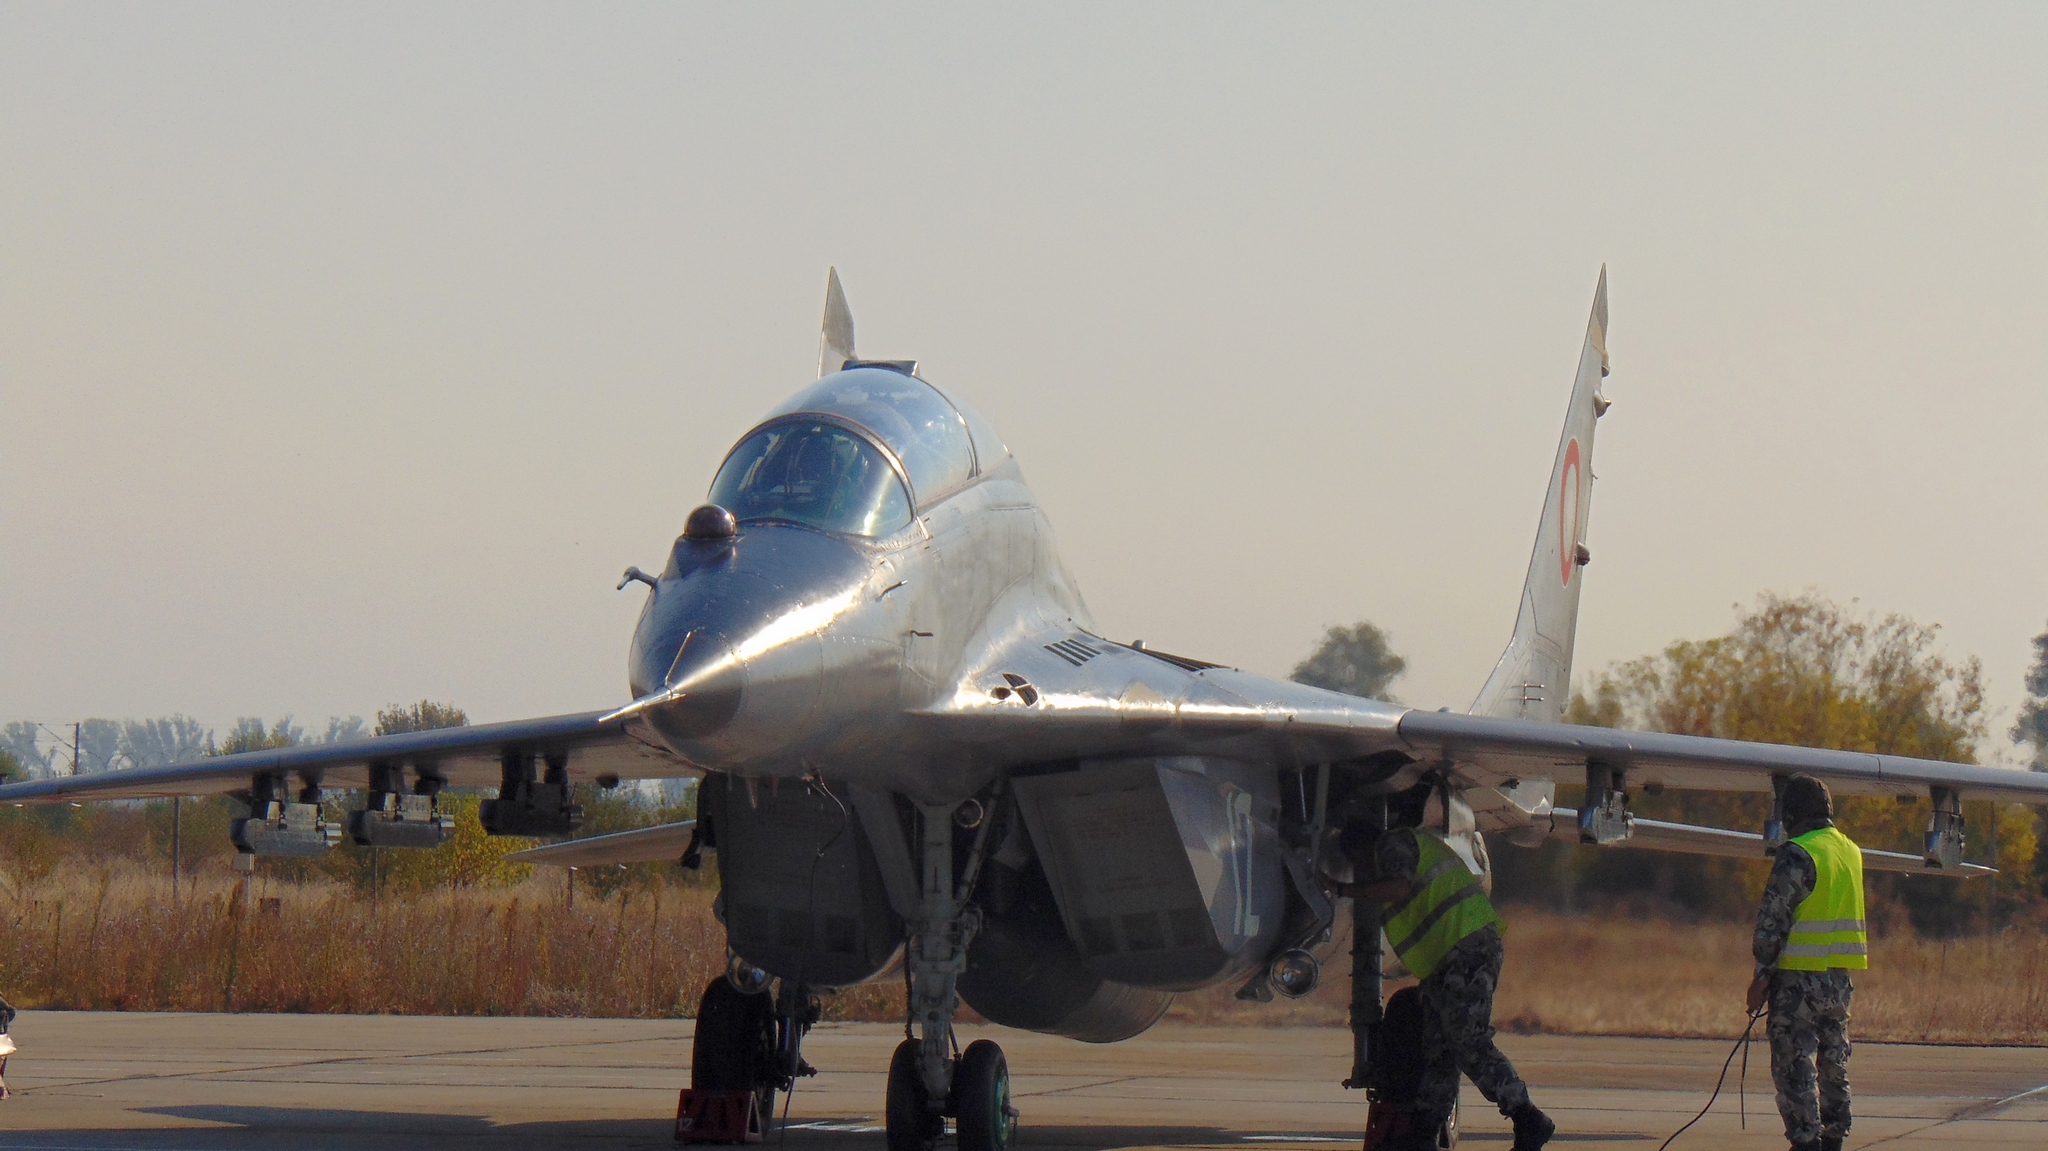 Министър Николай Ненчев летя на МиГ-29, пилотиран от подполковник Русев – последният полет от седмицата на съвместен Air Policing с американски военни пилоти. Съвместната мисия беше ползотворна, за да се уеднакви стила на работа. Министър Ненчев заяви, че небето на България отдавна не е било така строго охранявано, след заключителните полети по Air Policing в авиобаза Граф Игнатиево.  